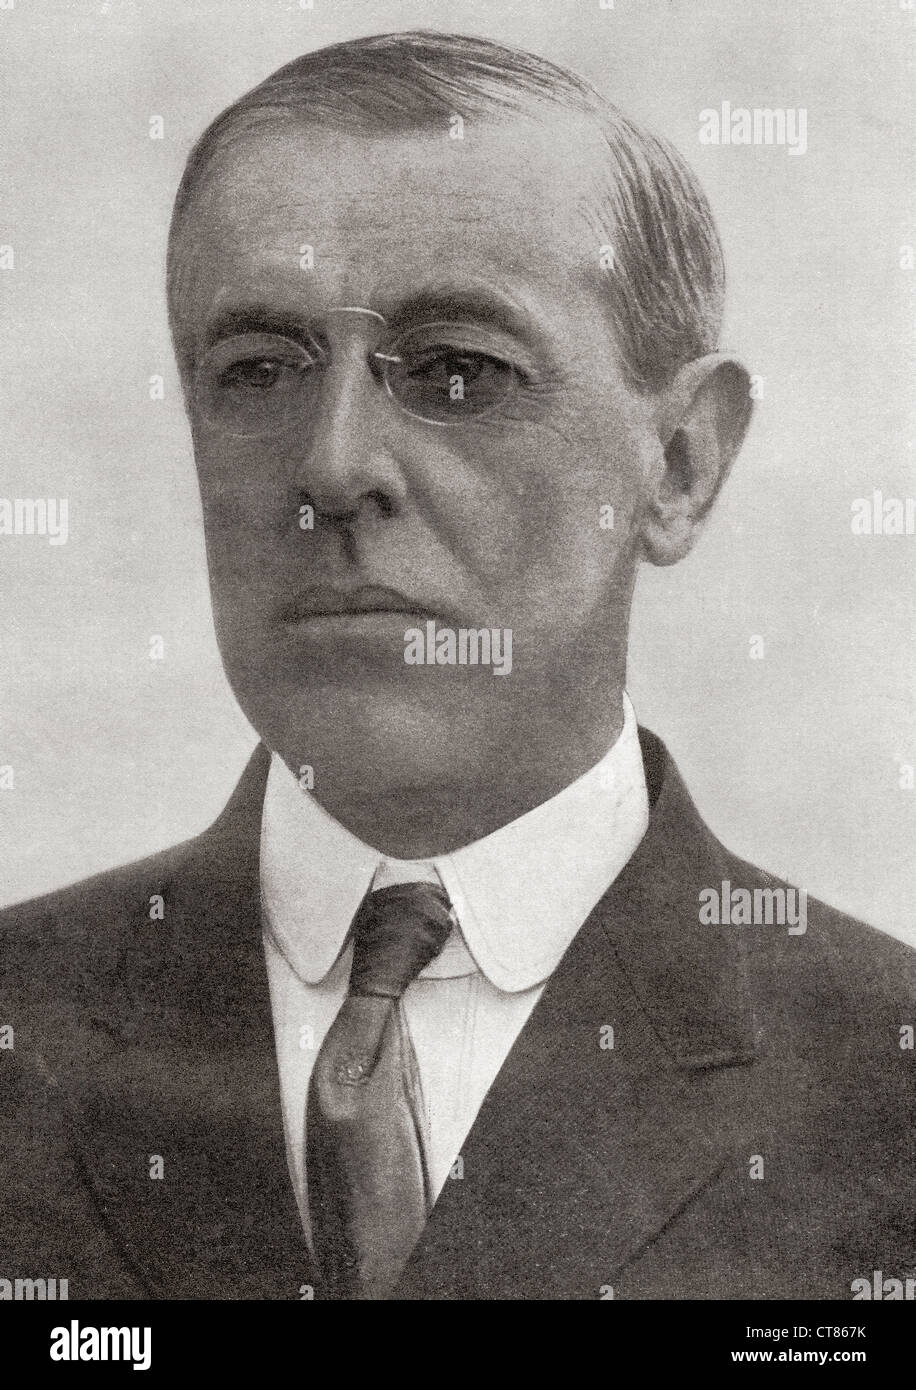 Thomas Woodrow Wilson, 1856-1924. 28. Präsident der Vereinigten Staaten von Amerika. Aus dem Jahr 1918 illustriert. Stockfoto